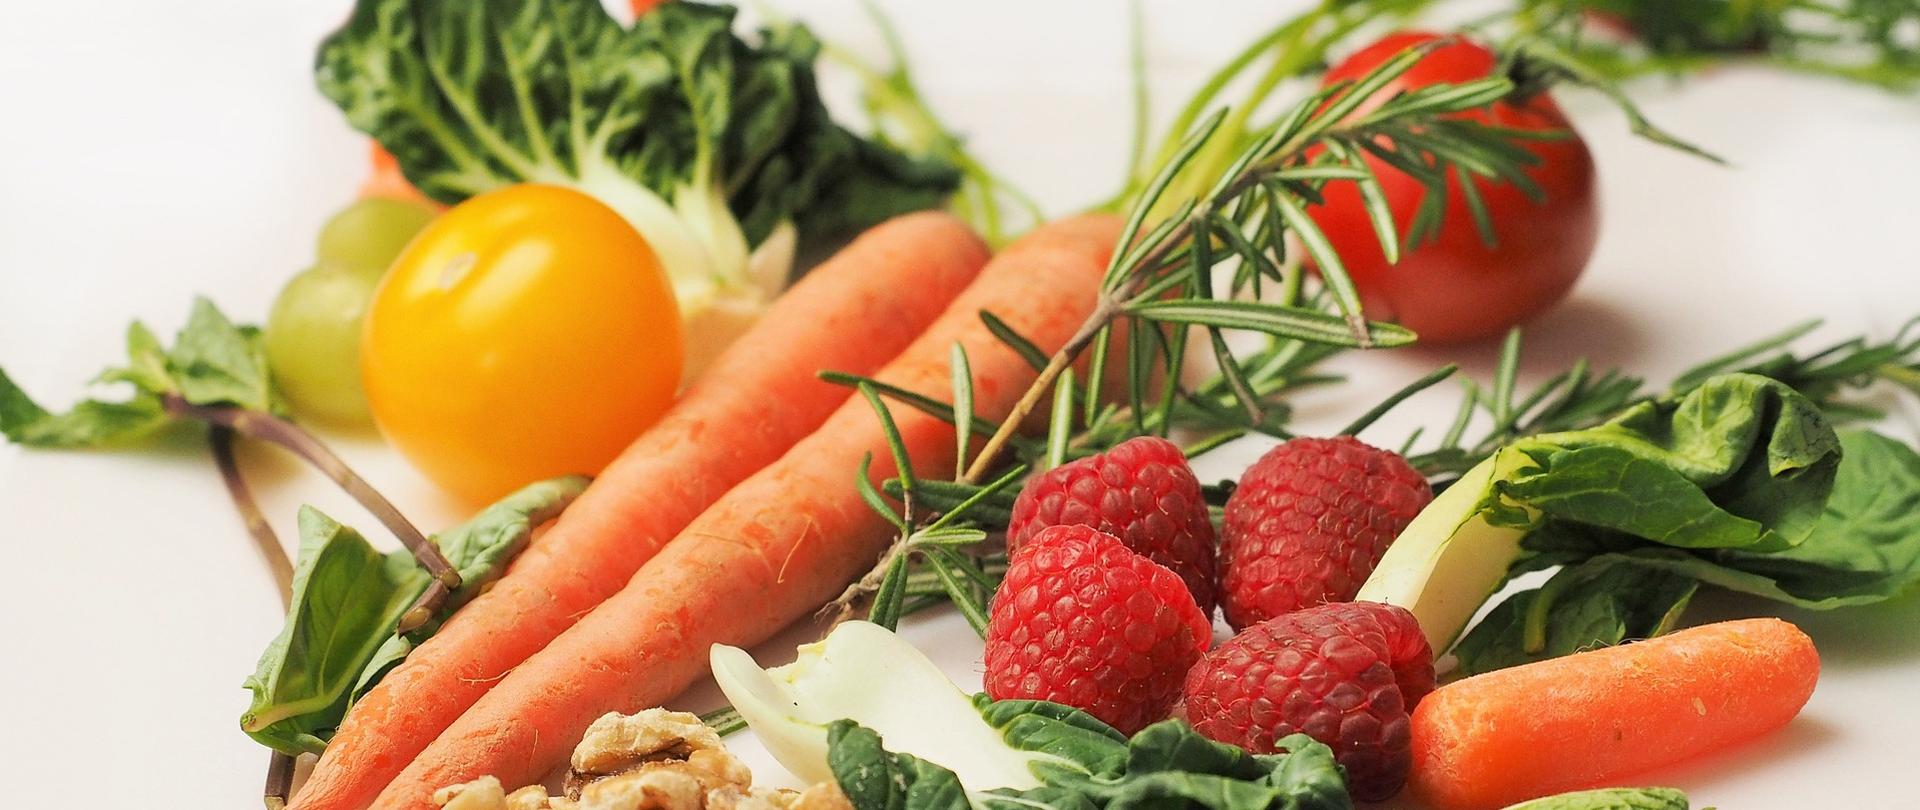 świeże owoce i warzywa - marchewki, maliny, pomidory, świeże zioła